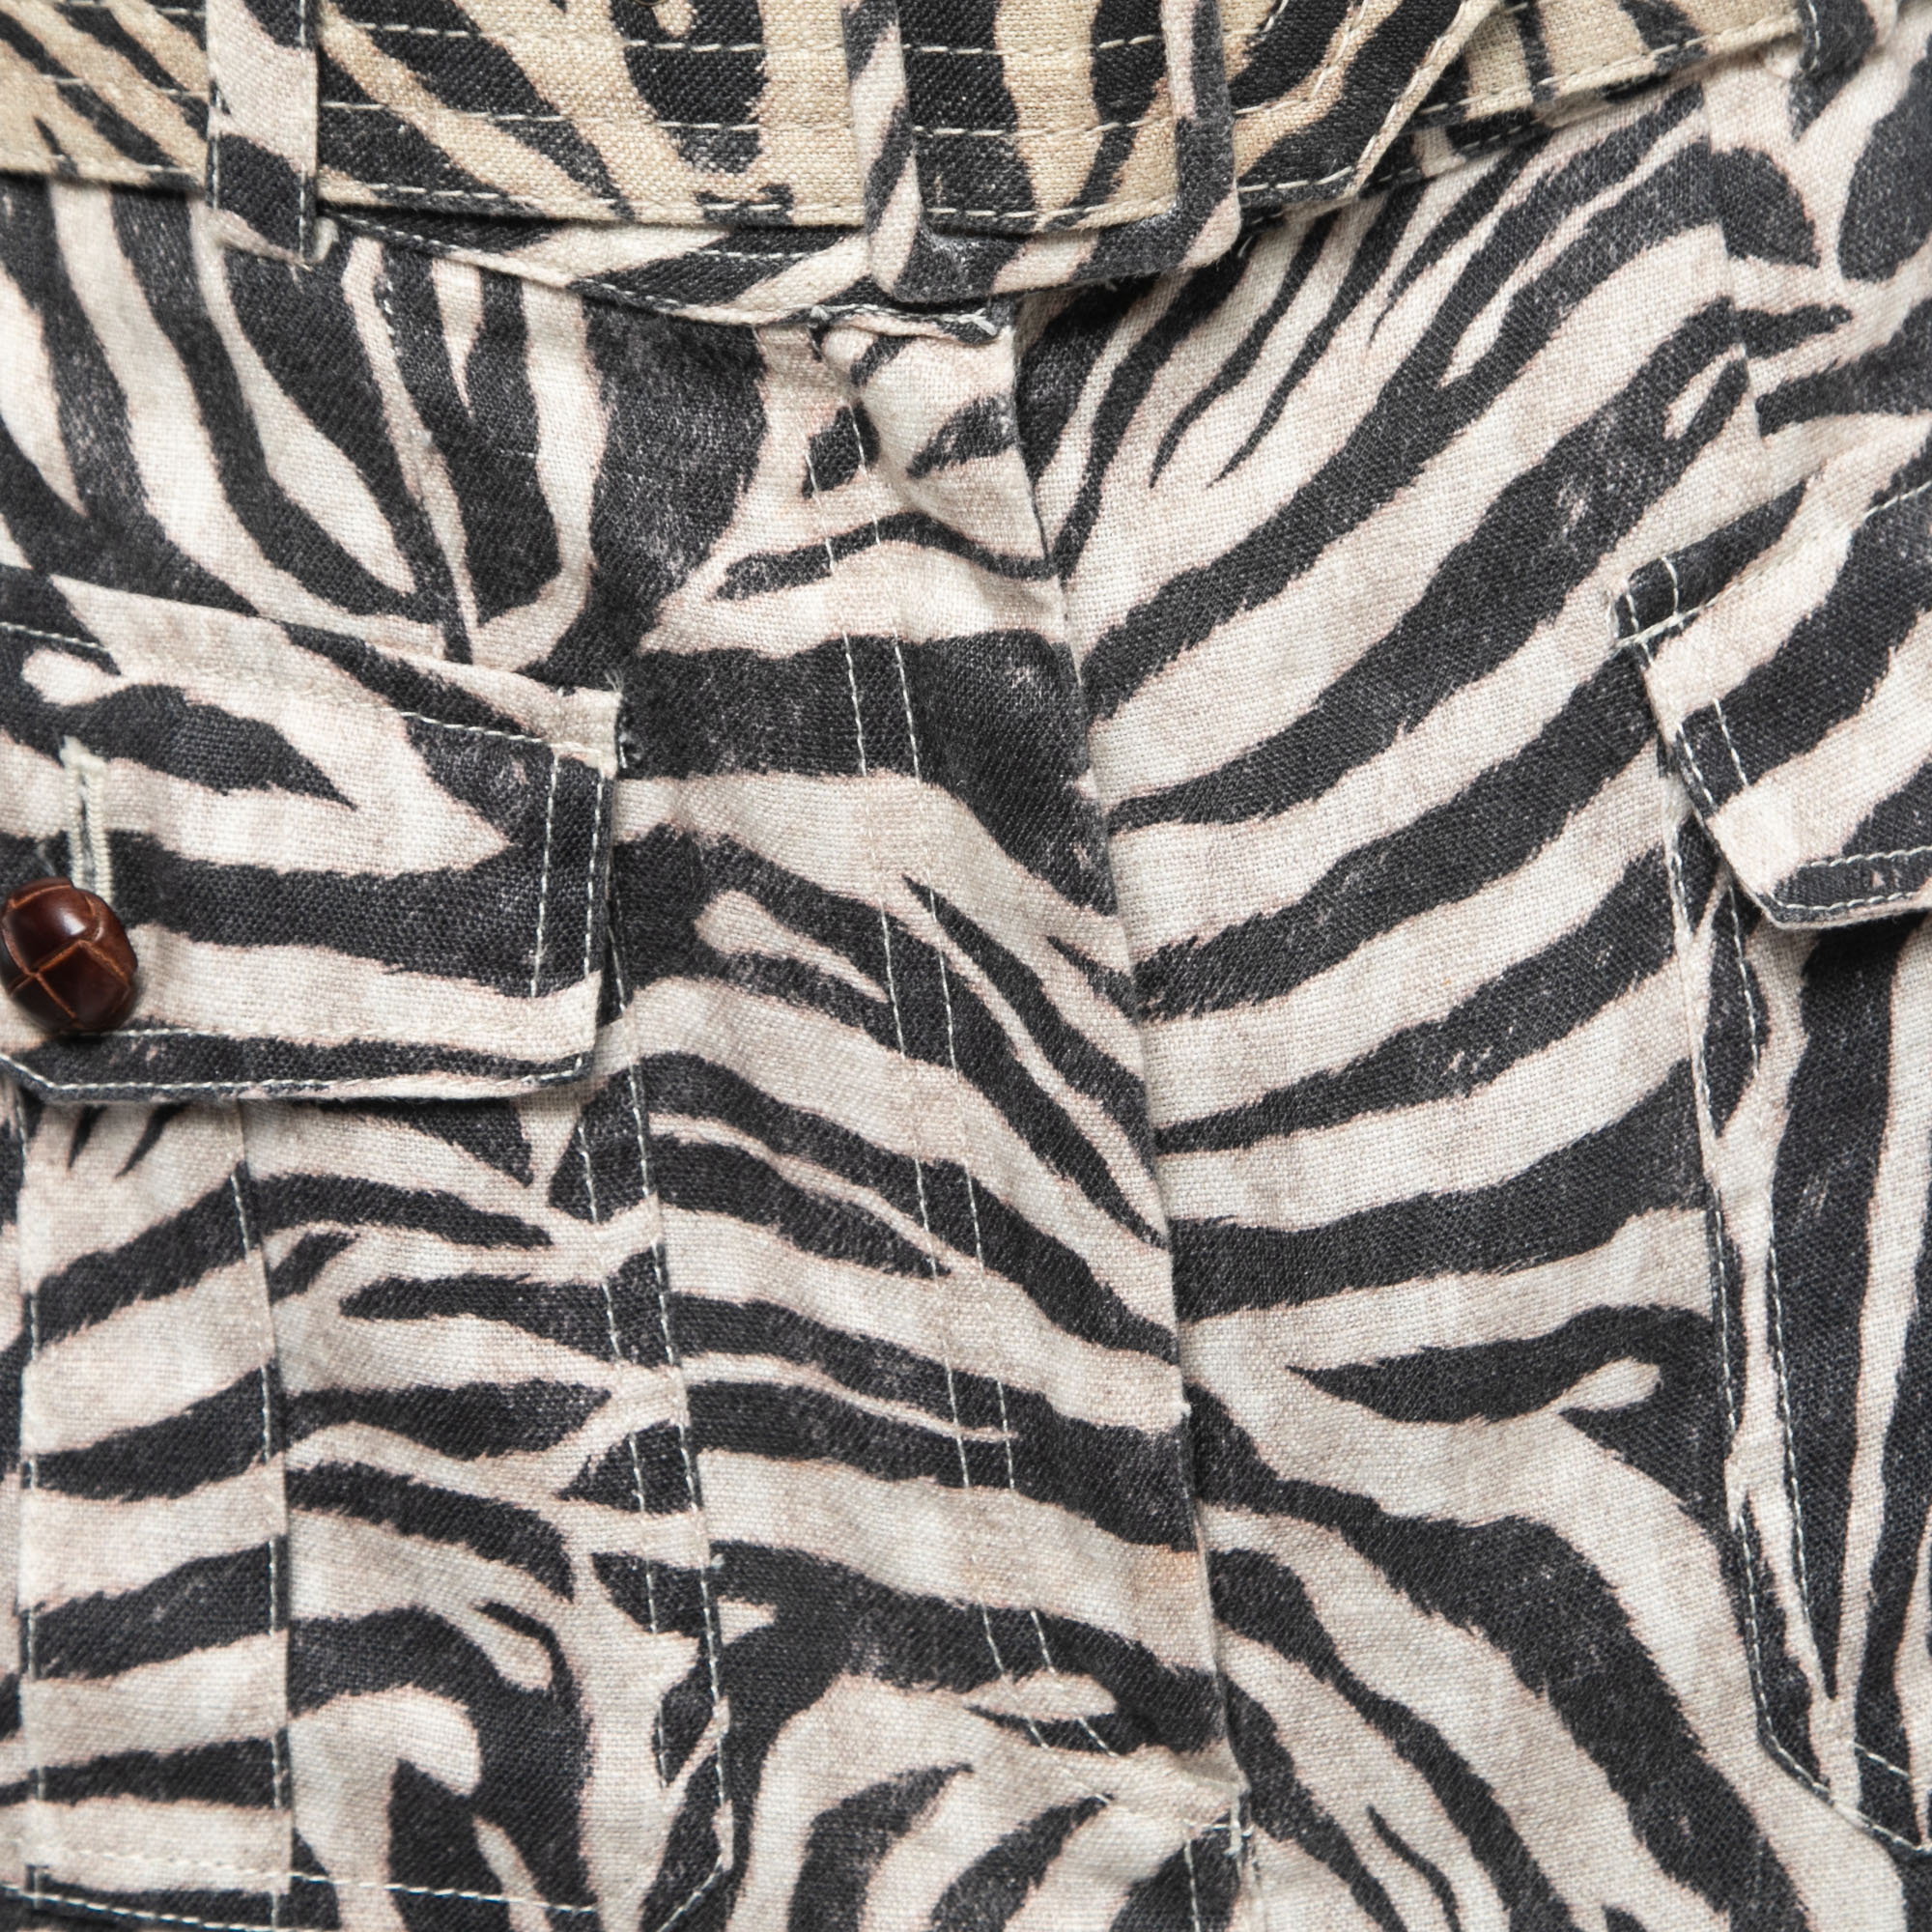 Zimmermann Beige Zebra Print Linen Belted Mini Skirt M